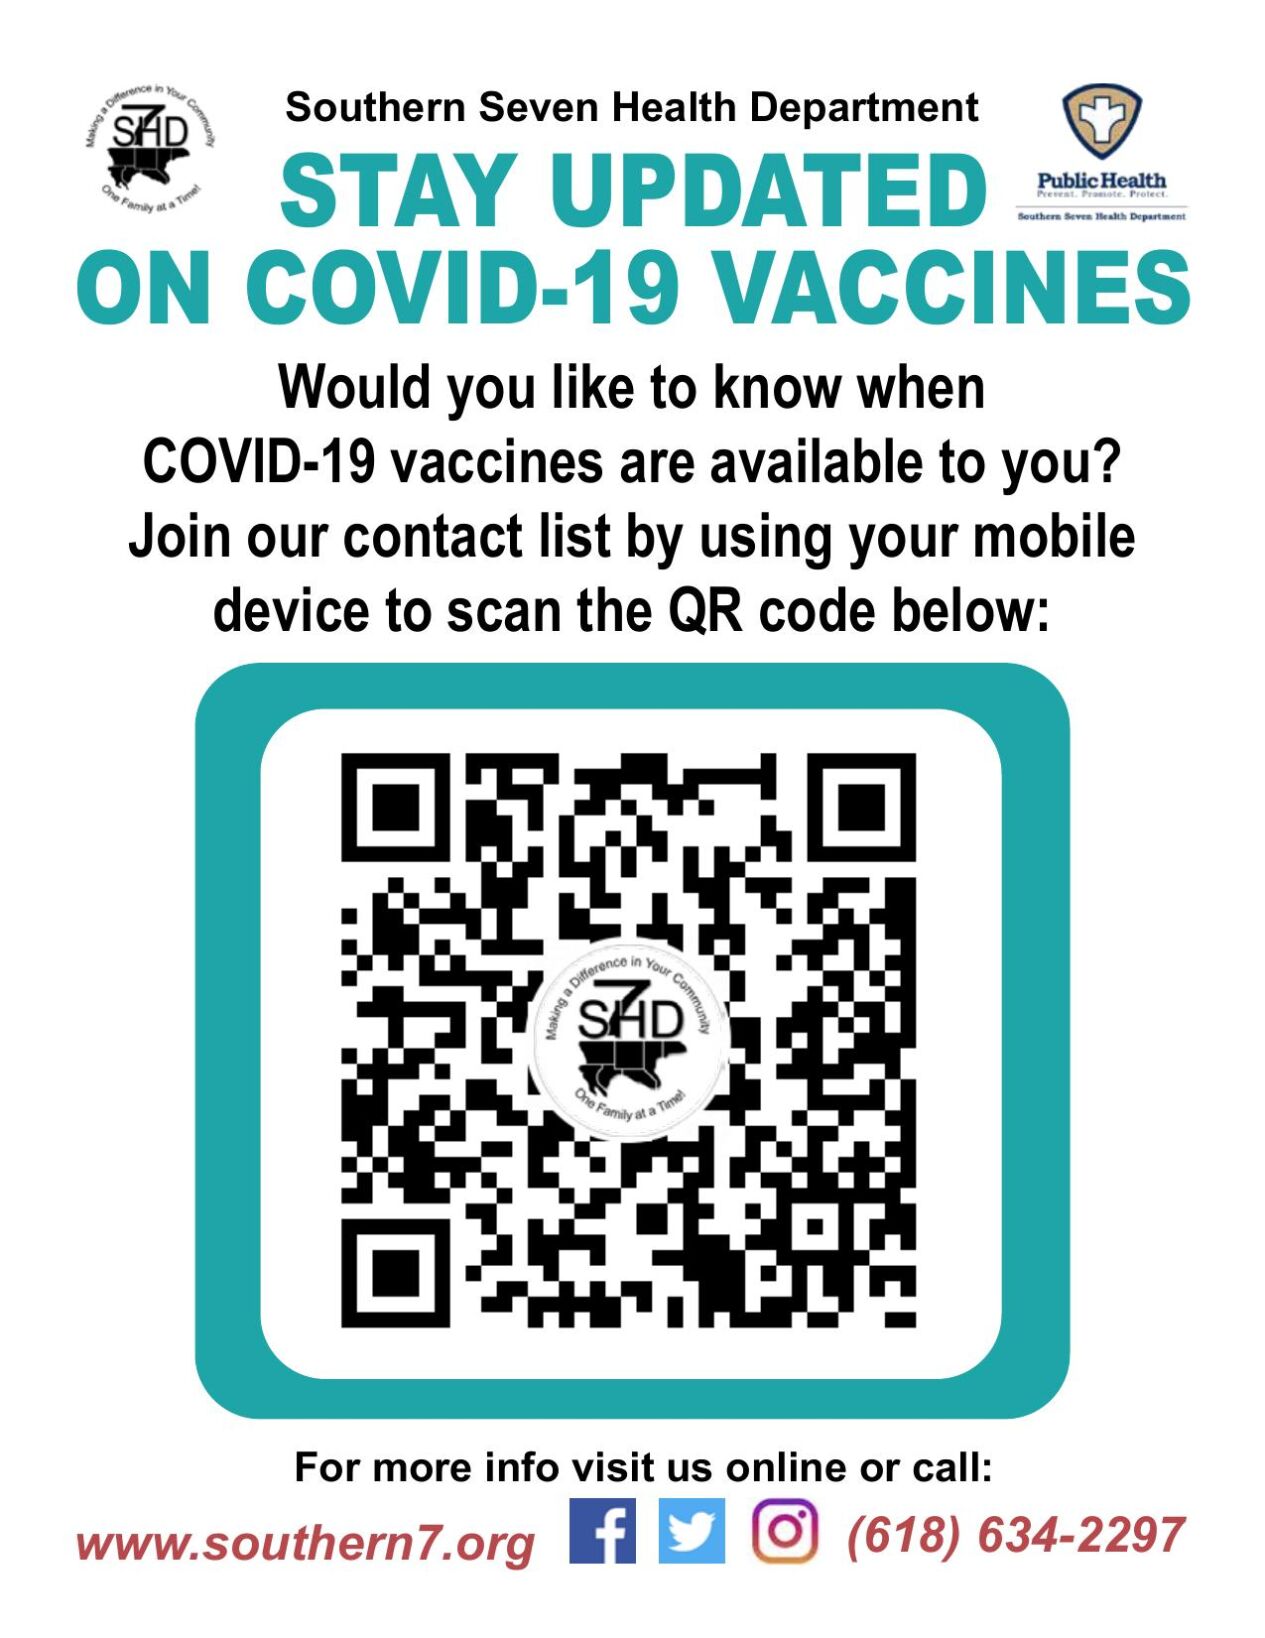 illinois covid vaccine registration